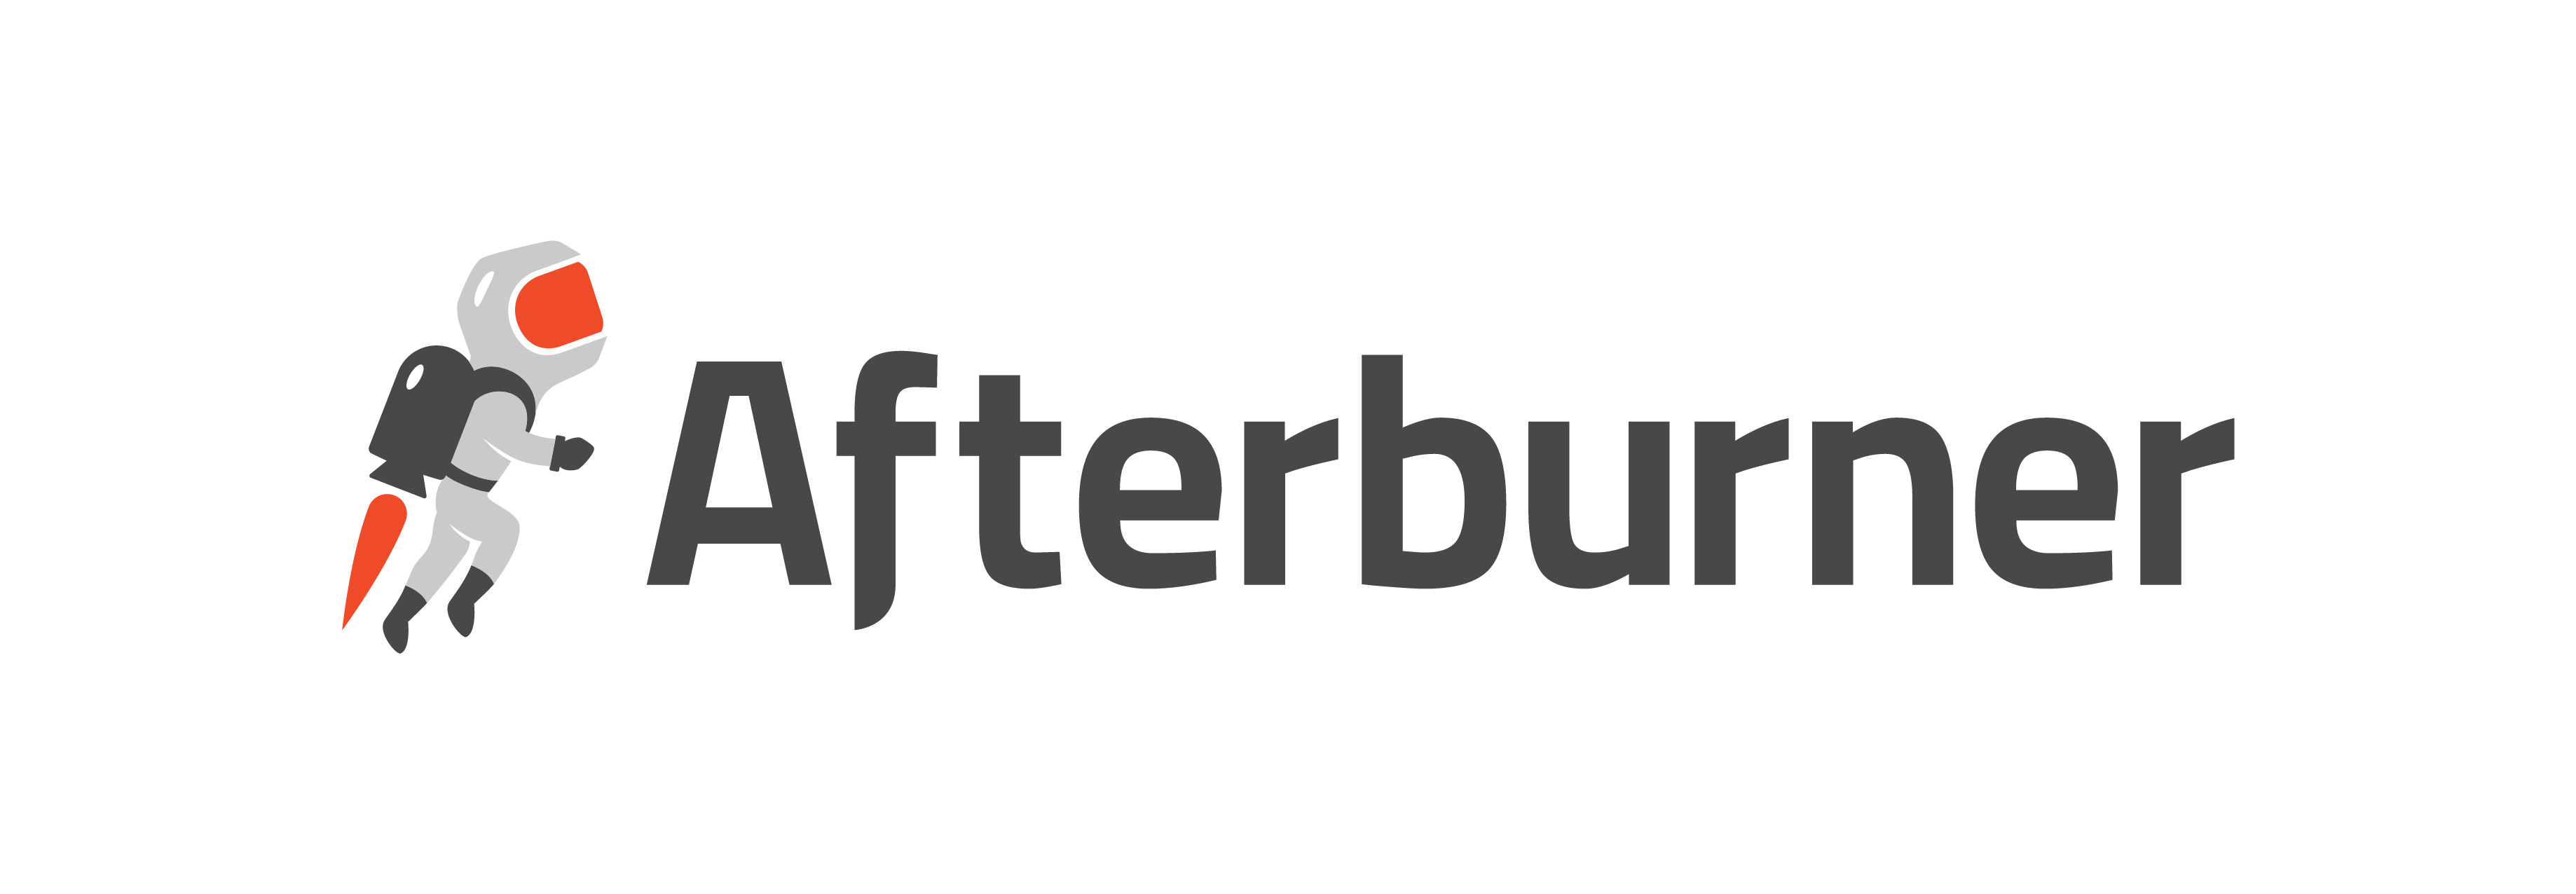 Afterburner Logo - Home | Afterburner Hosting